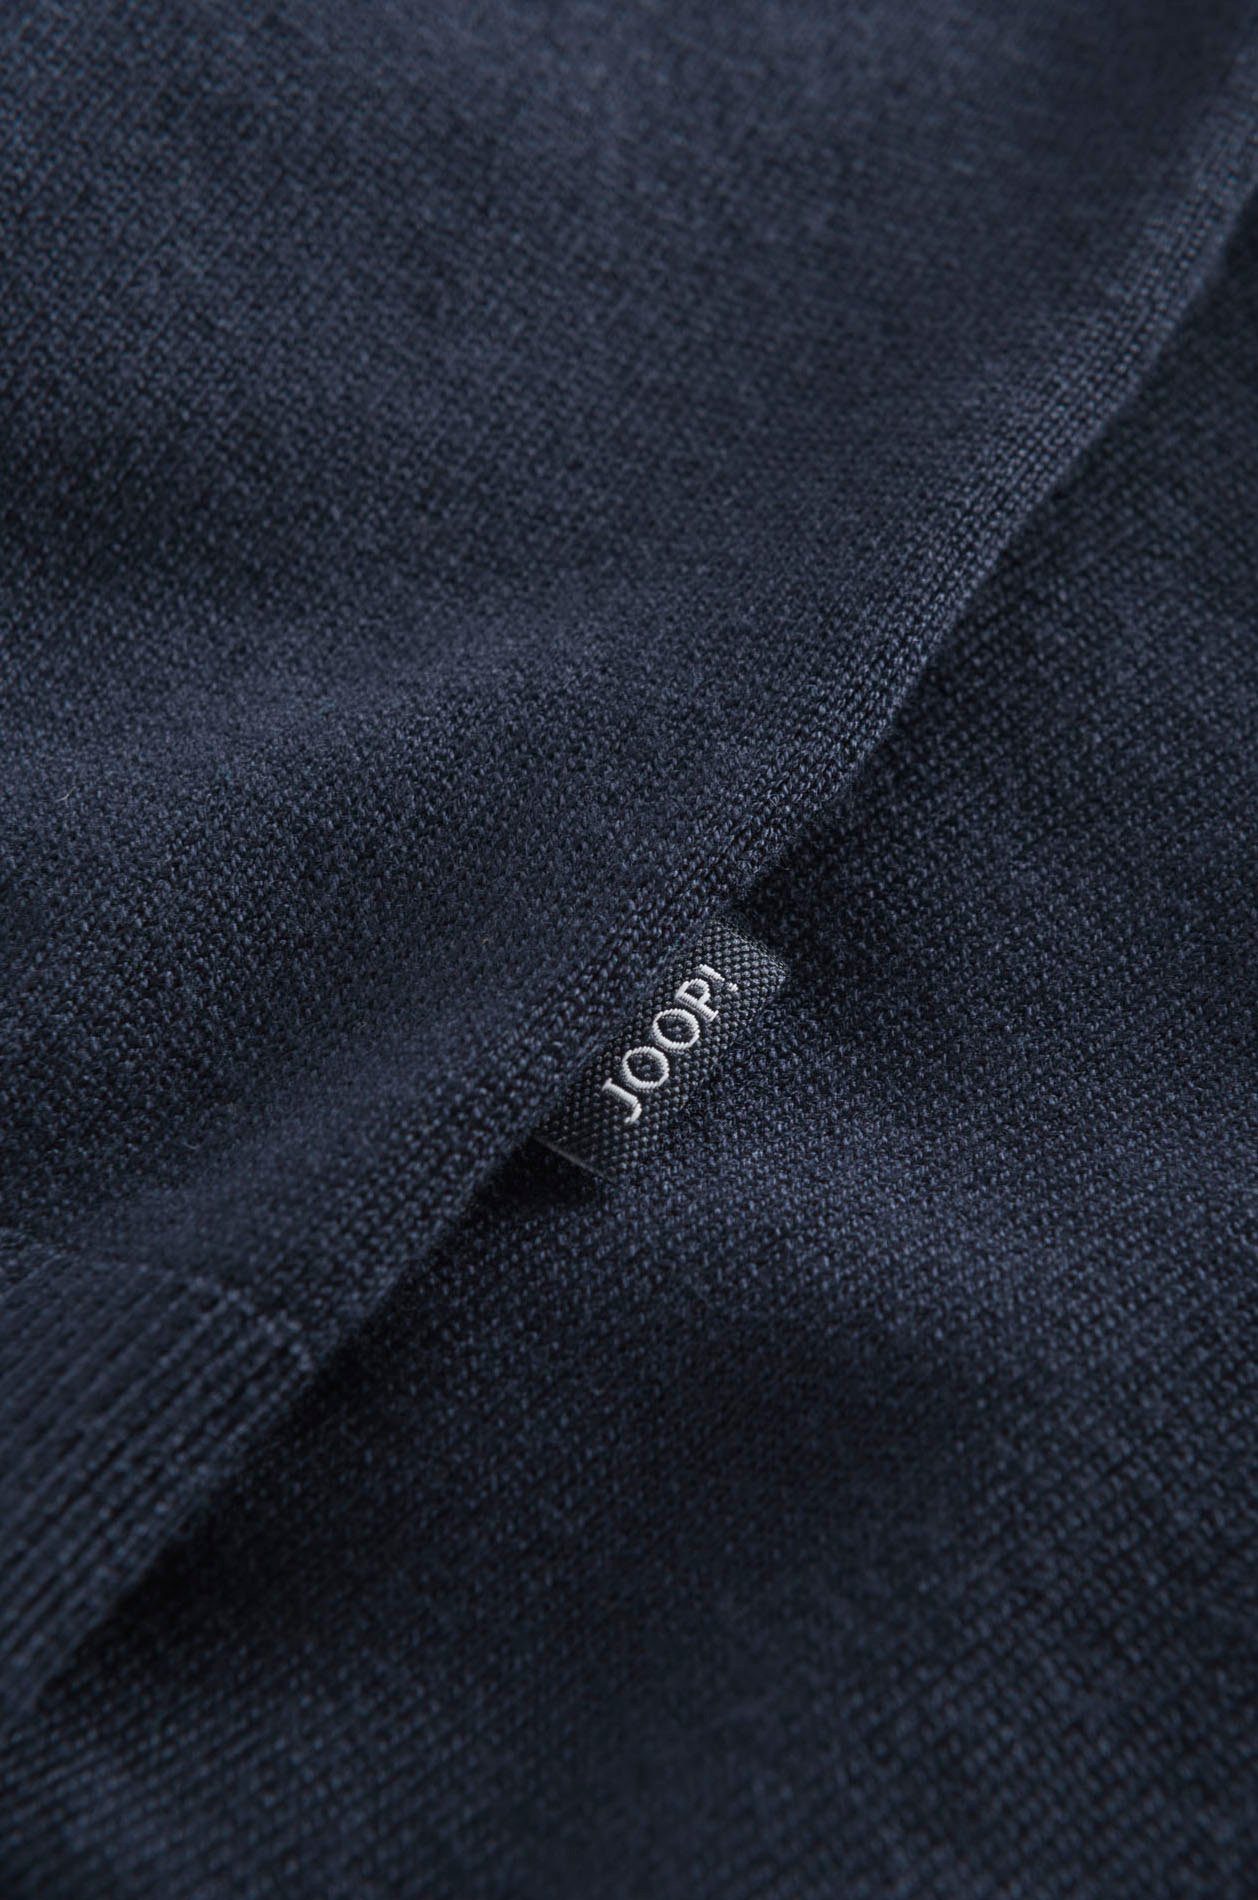 Joop Jeans Kapuzenpullover soften Tunnelzugbändern, mit Kontrastfarbener Kapuze an Markenschriftzug innen Belminos der